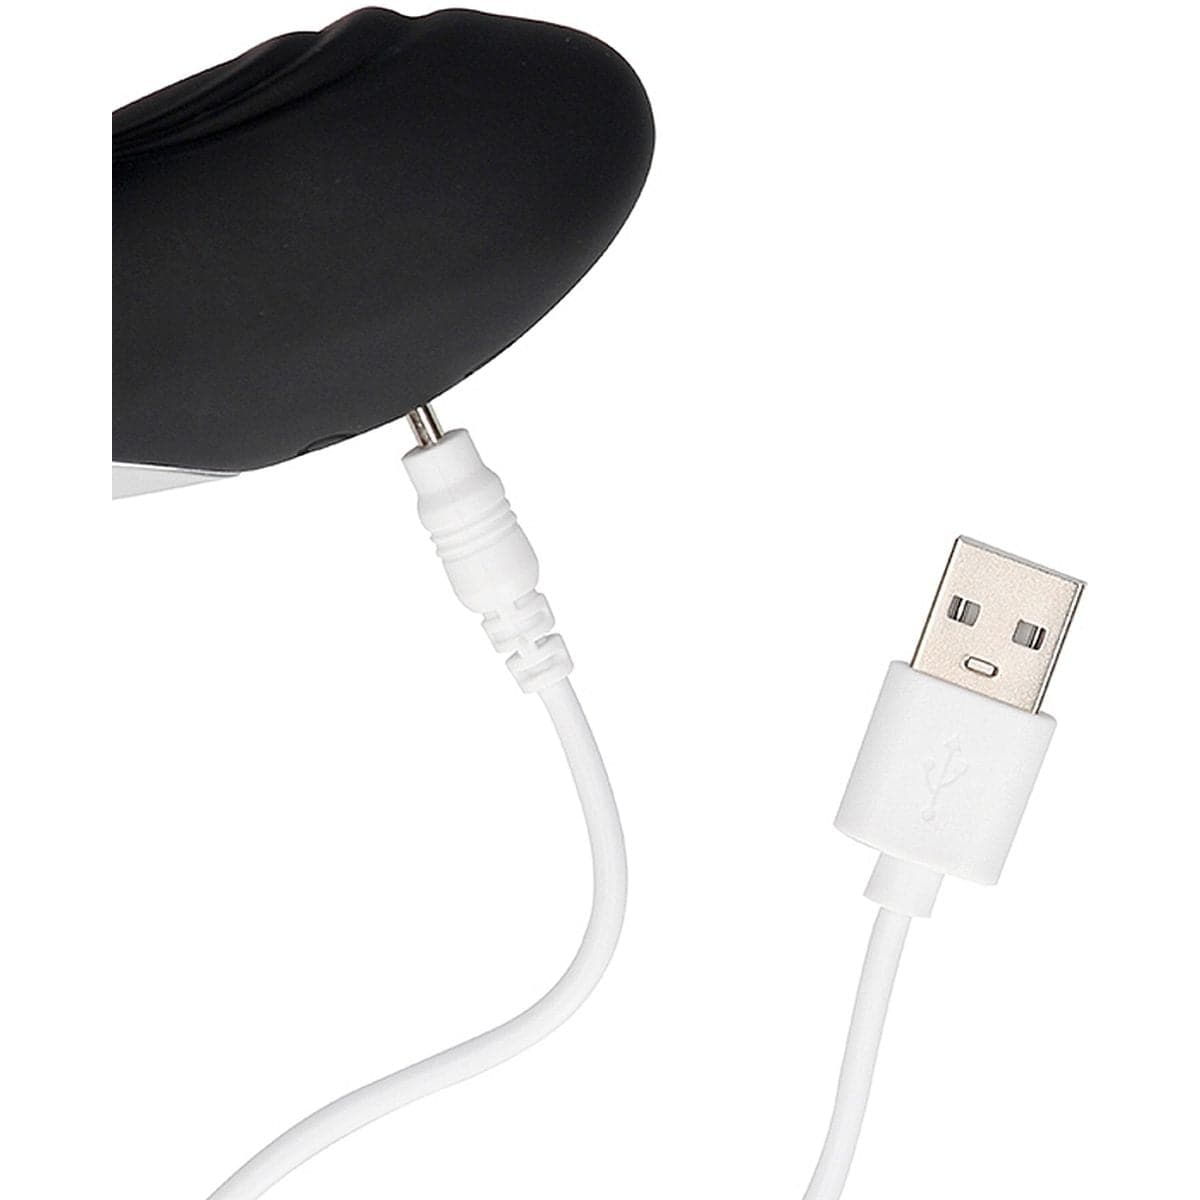 Estimulador Bent Preto USB com Controlo Remoto, 10vibrações - Pérola SexShop